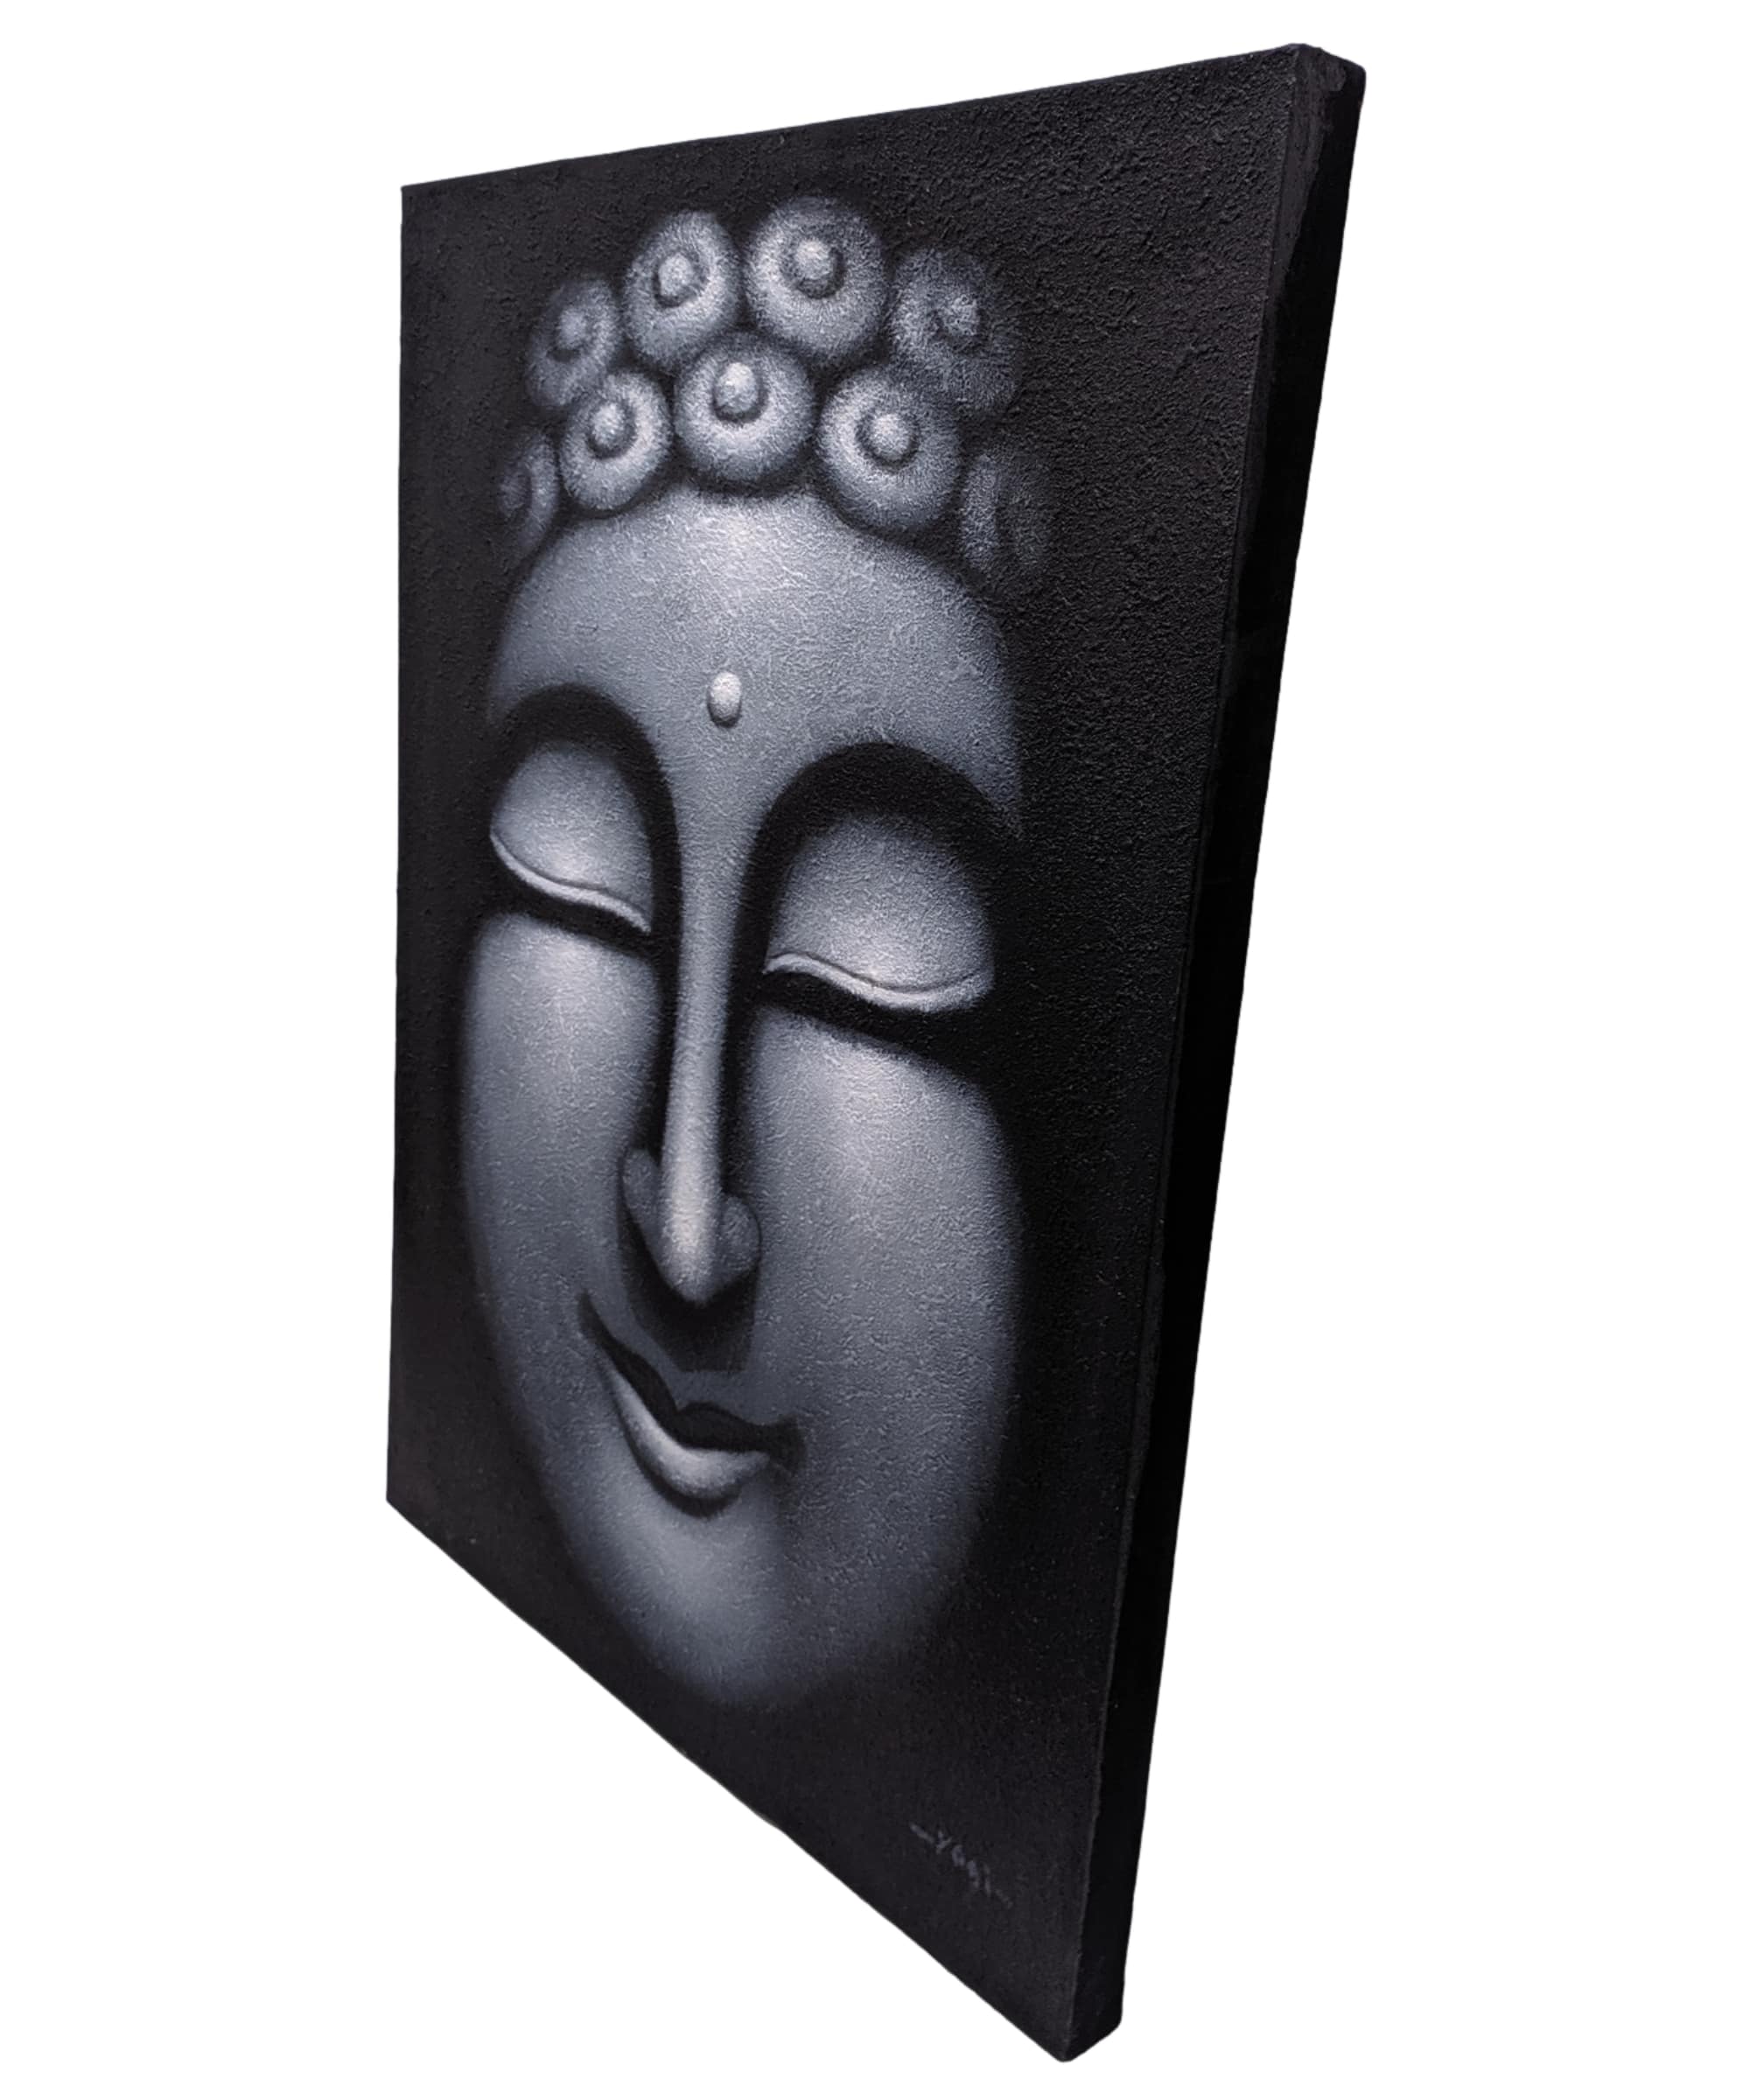 Cuadro de Buda en blanco y negro